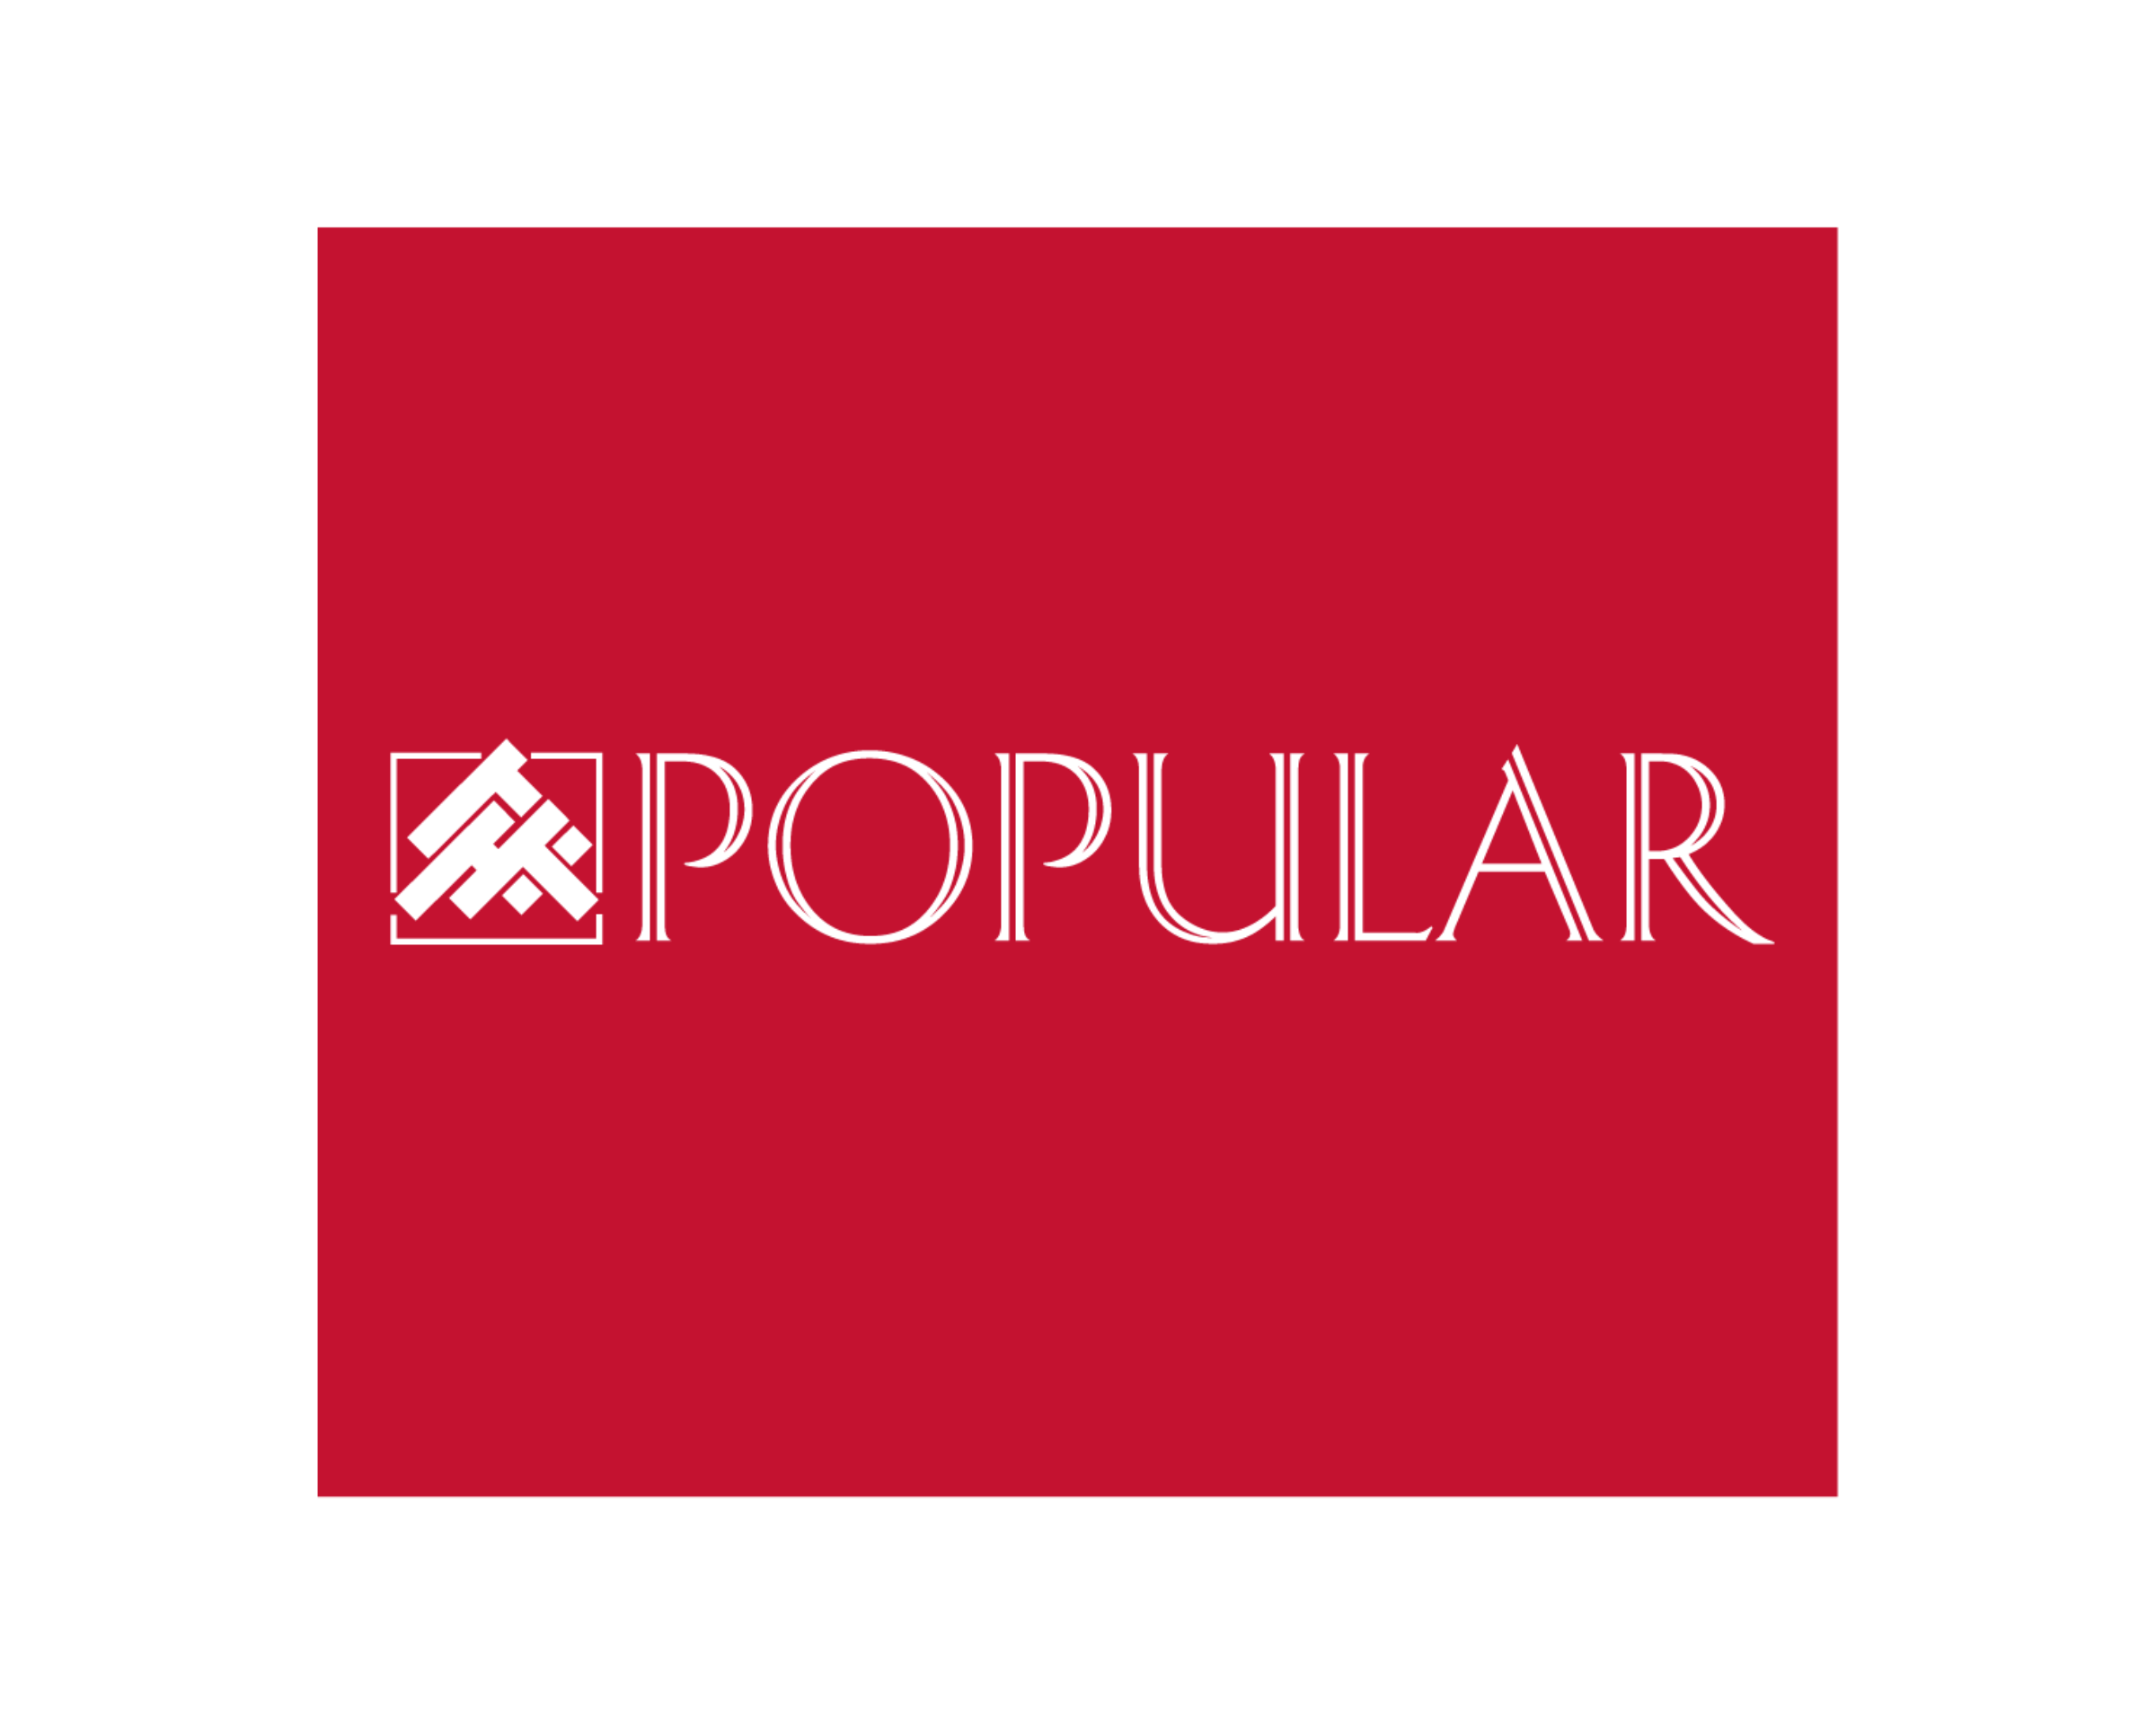 Popular Logo